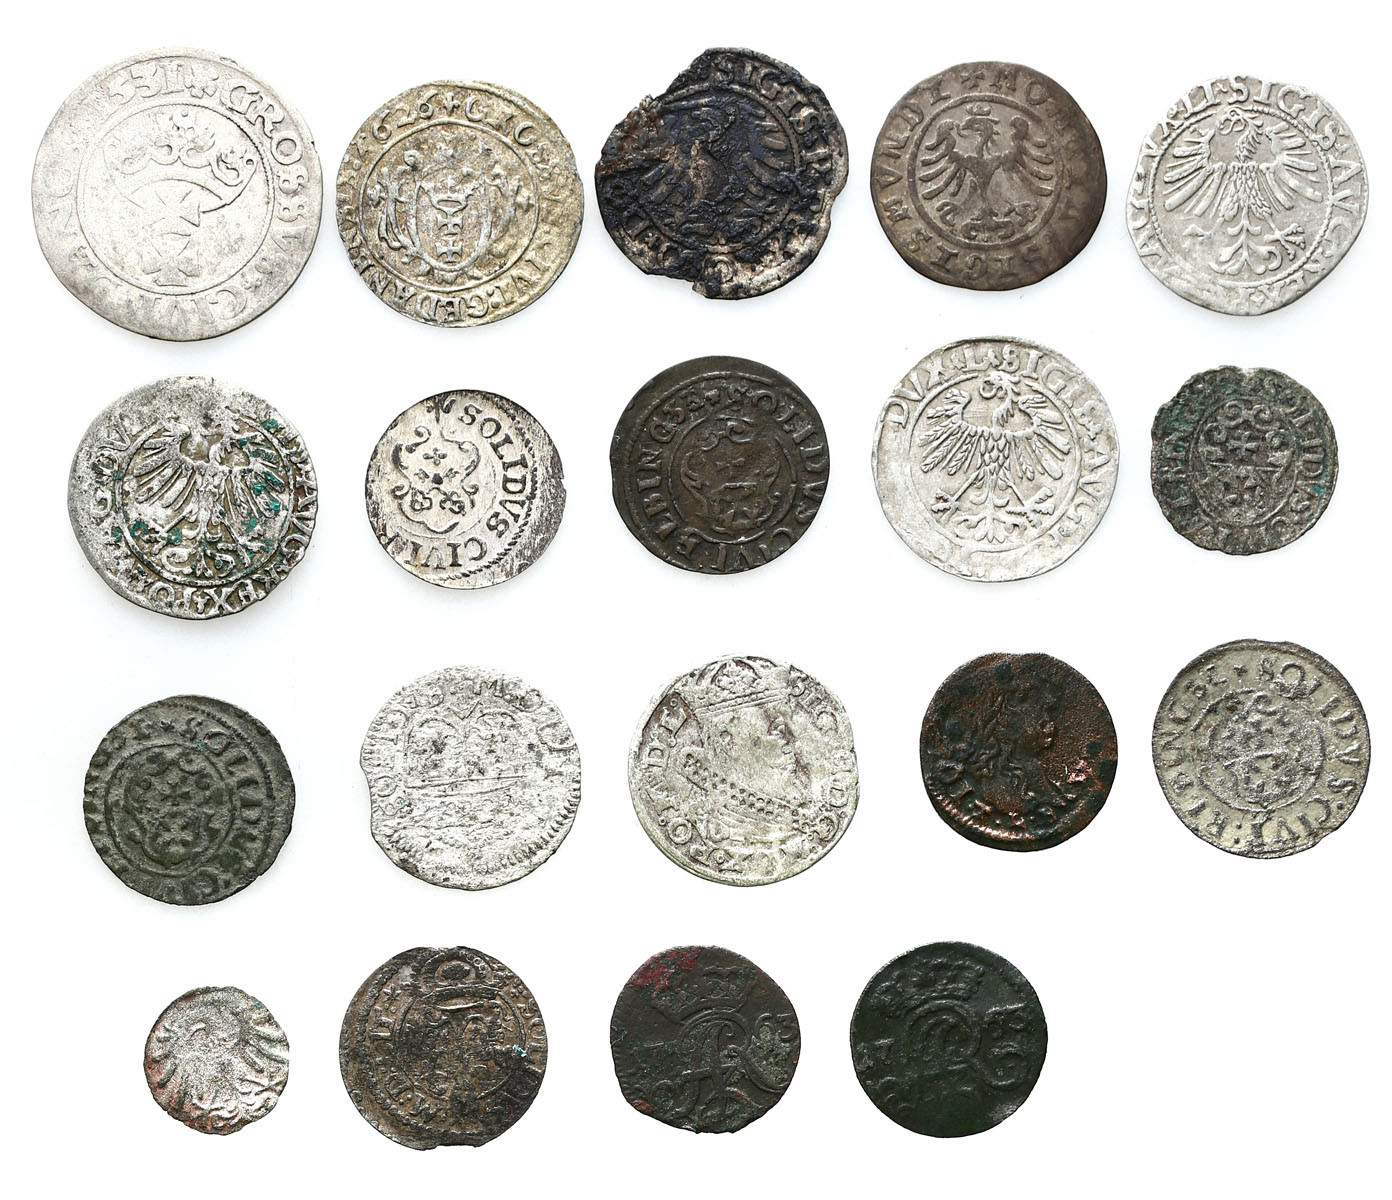 Polska i Inflanty, XVI-XVIII wiek. Denar, półgrosz, grosz, szeląg, zestaw 19 monet